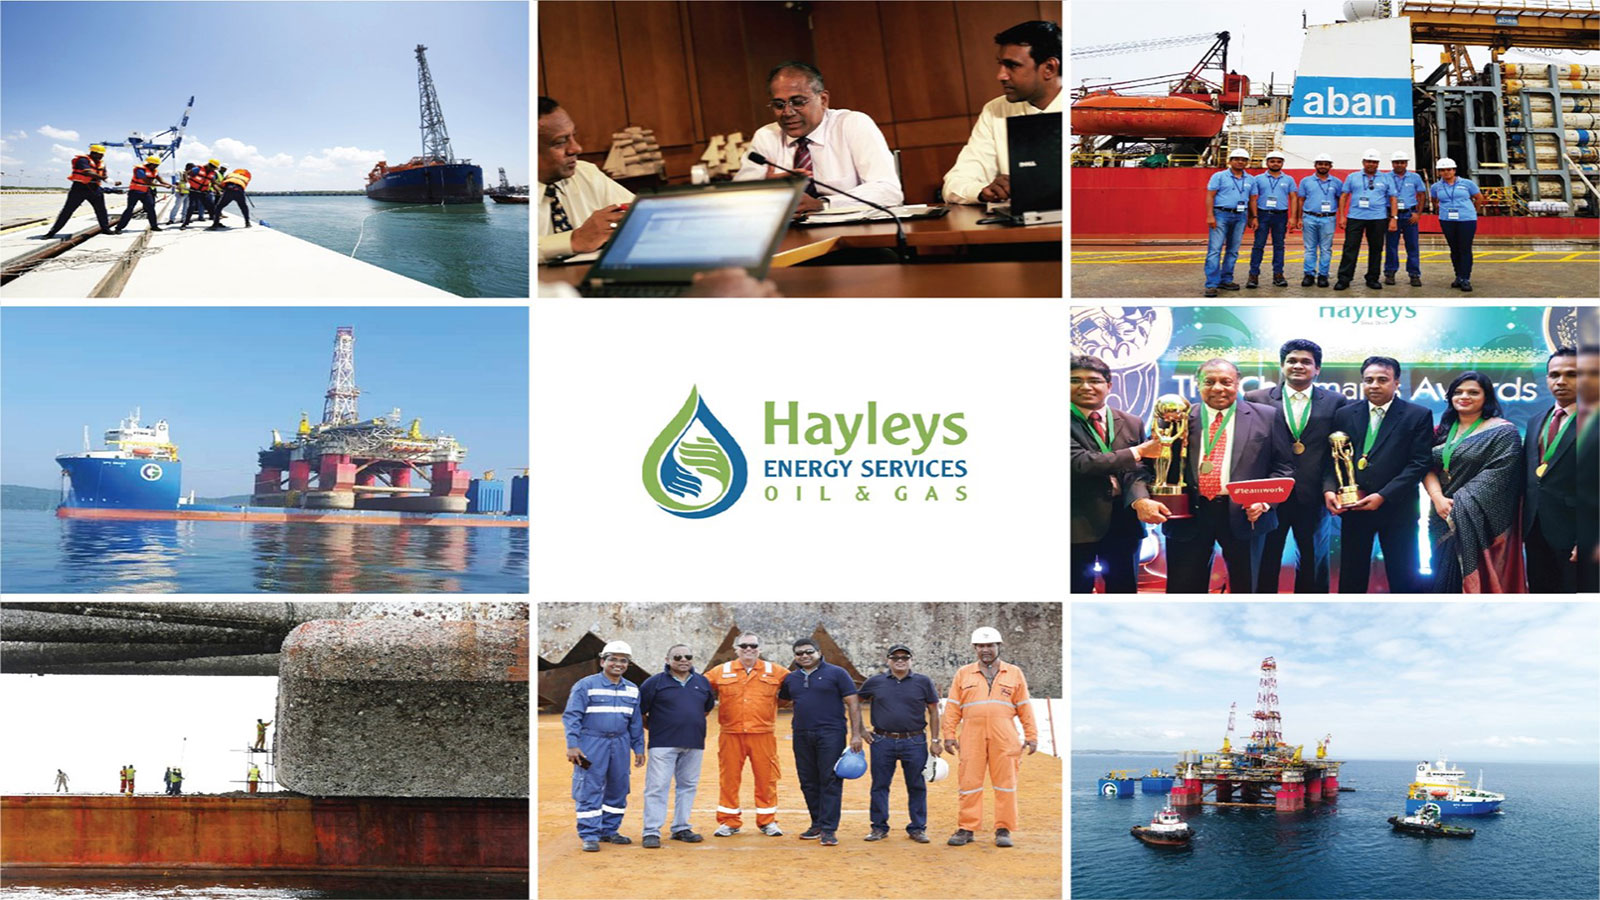 HAYLEYS ENERGY SERVICES LANKA PVT LTD